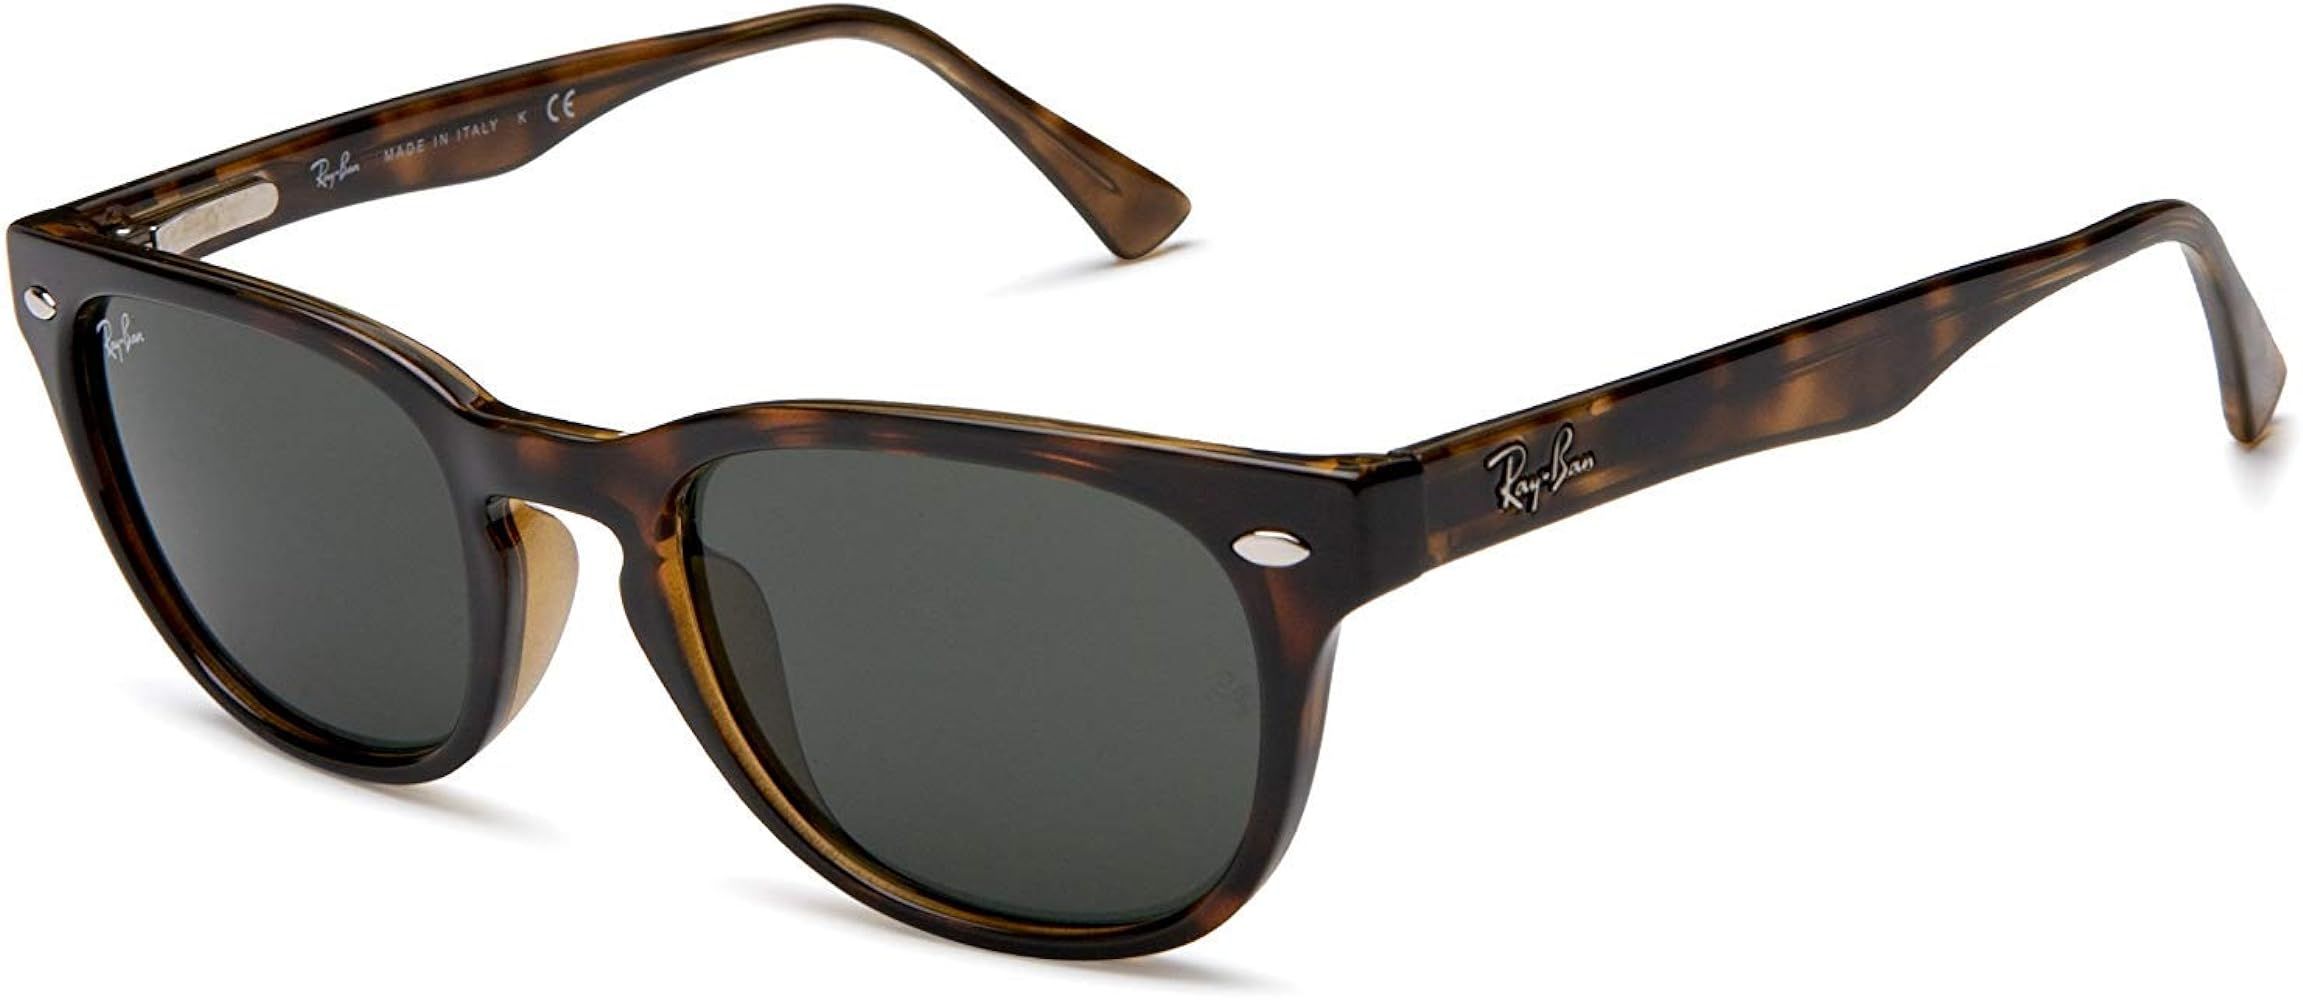 Ray-Ban Rb4140 Wayfarer Sunglasses | Amazon (US)